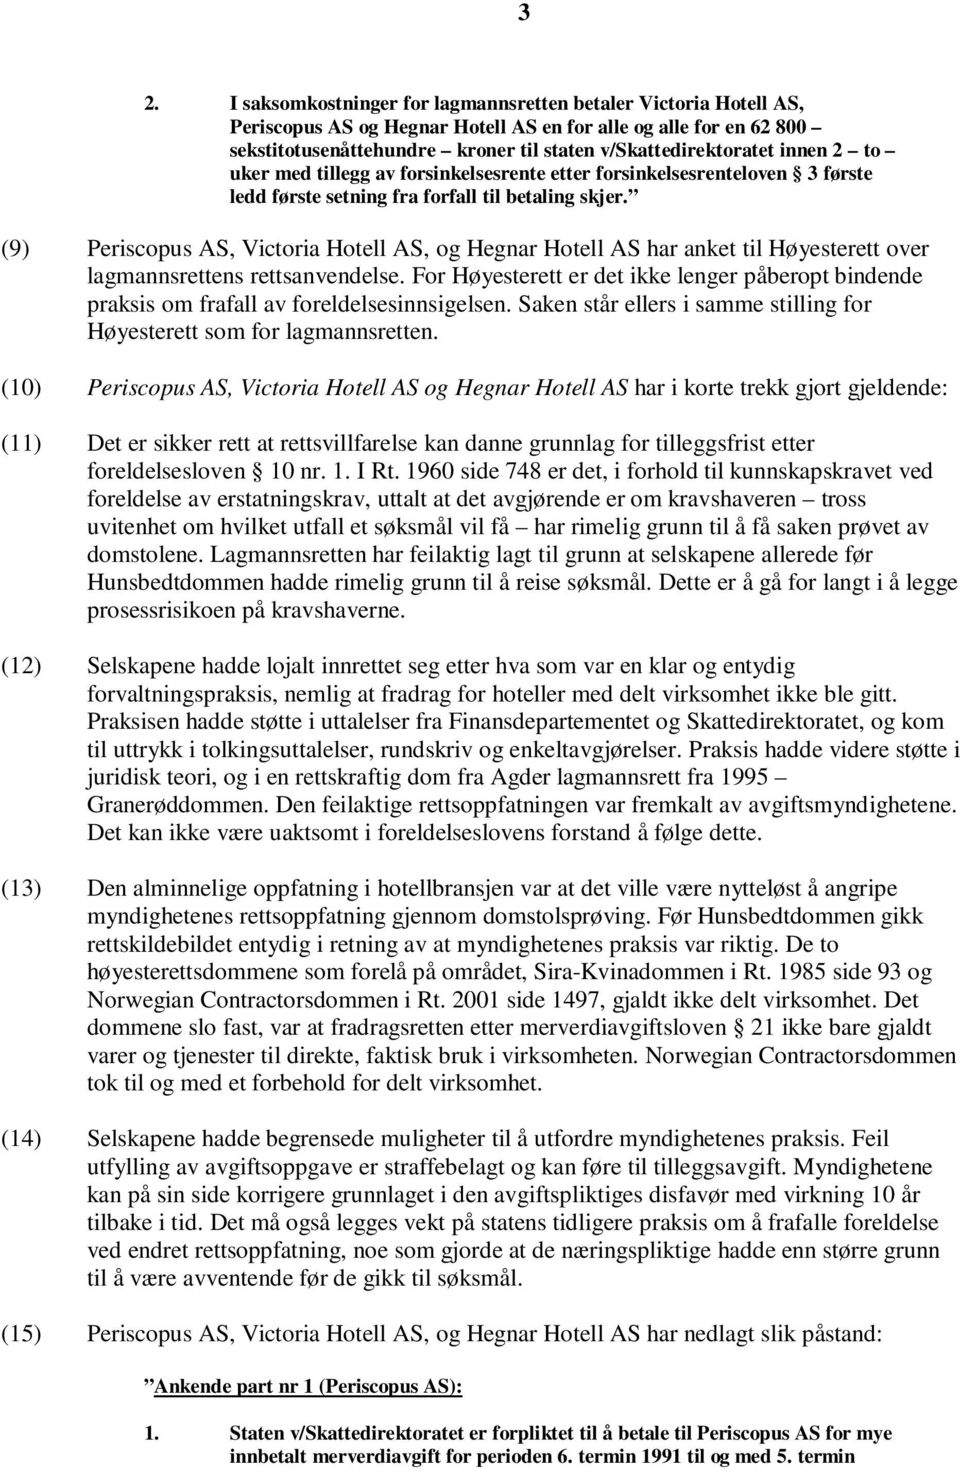 (9) Periscopus AS, Victoria Hotell AS, og Hegnar Hotell AS har anket til Høyesterett over lagmannsrettens rettsanvendelse.